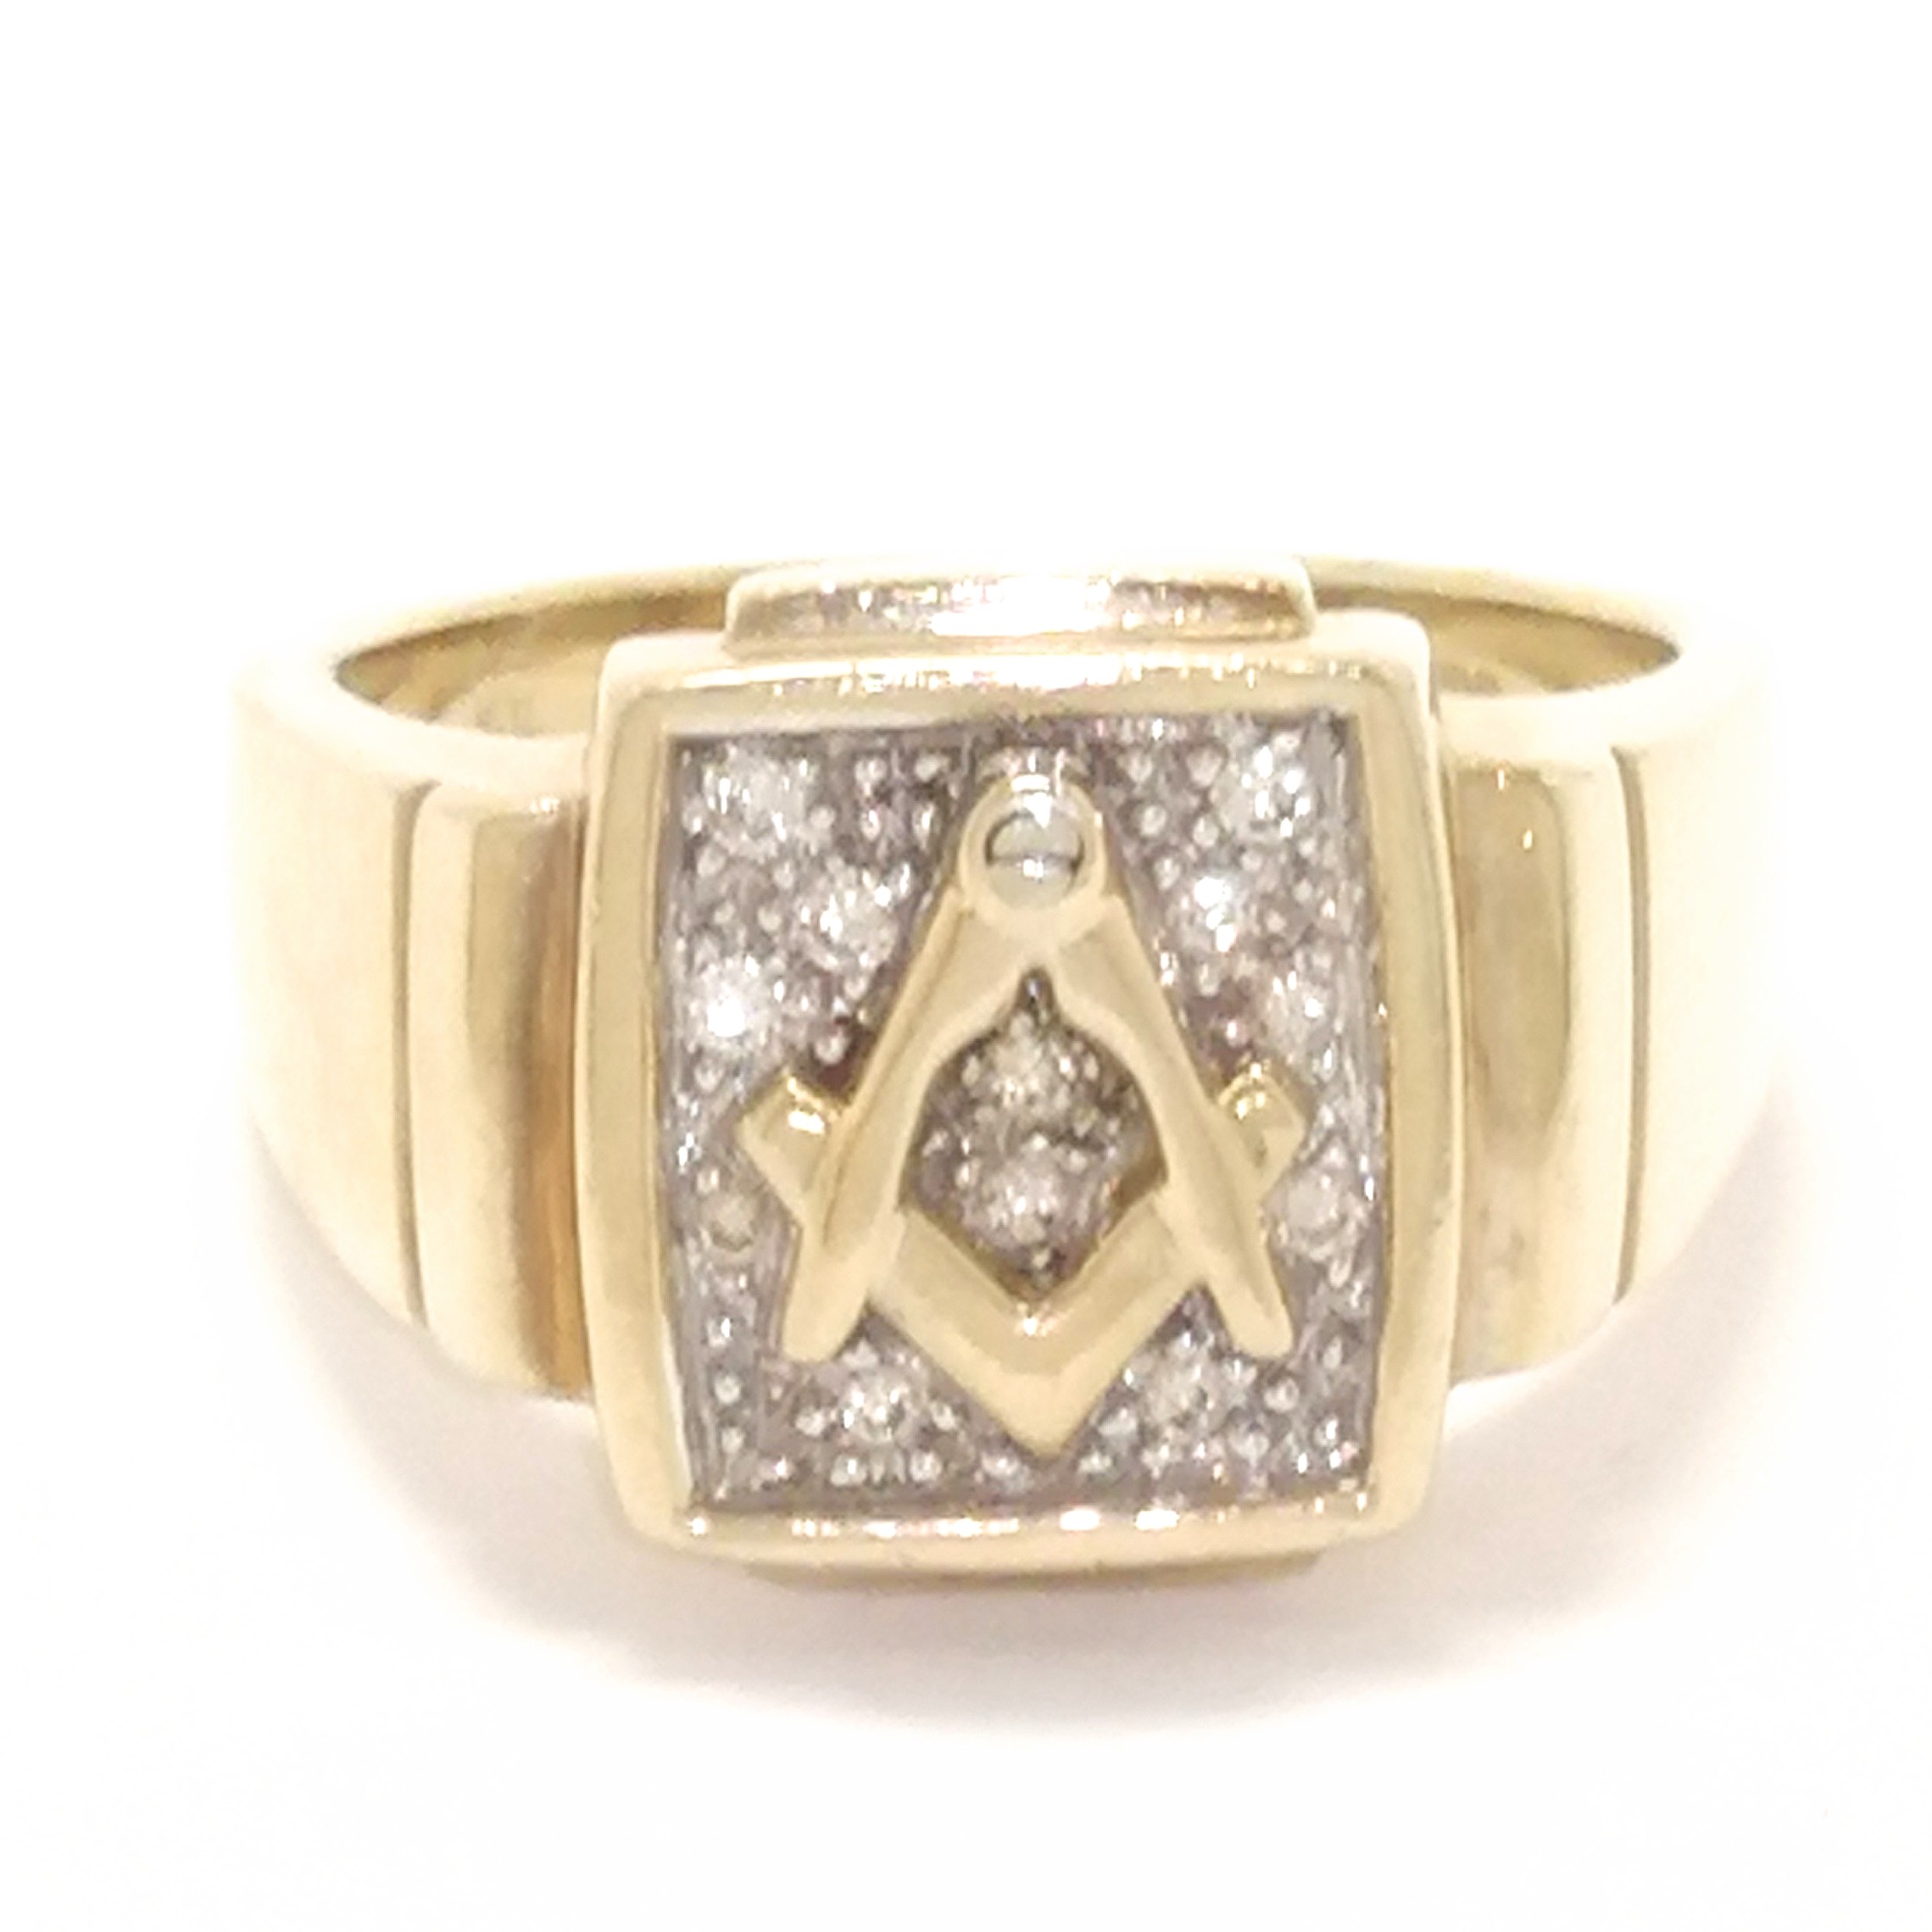 Buy Masonic Ring 18K Gold Diamonds Big Men's Ring Heavy Gold Ring Online in  India - Etsy